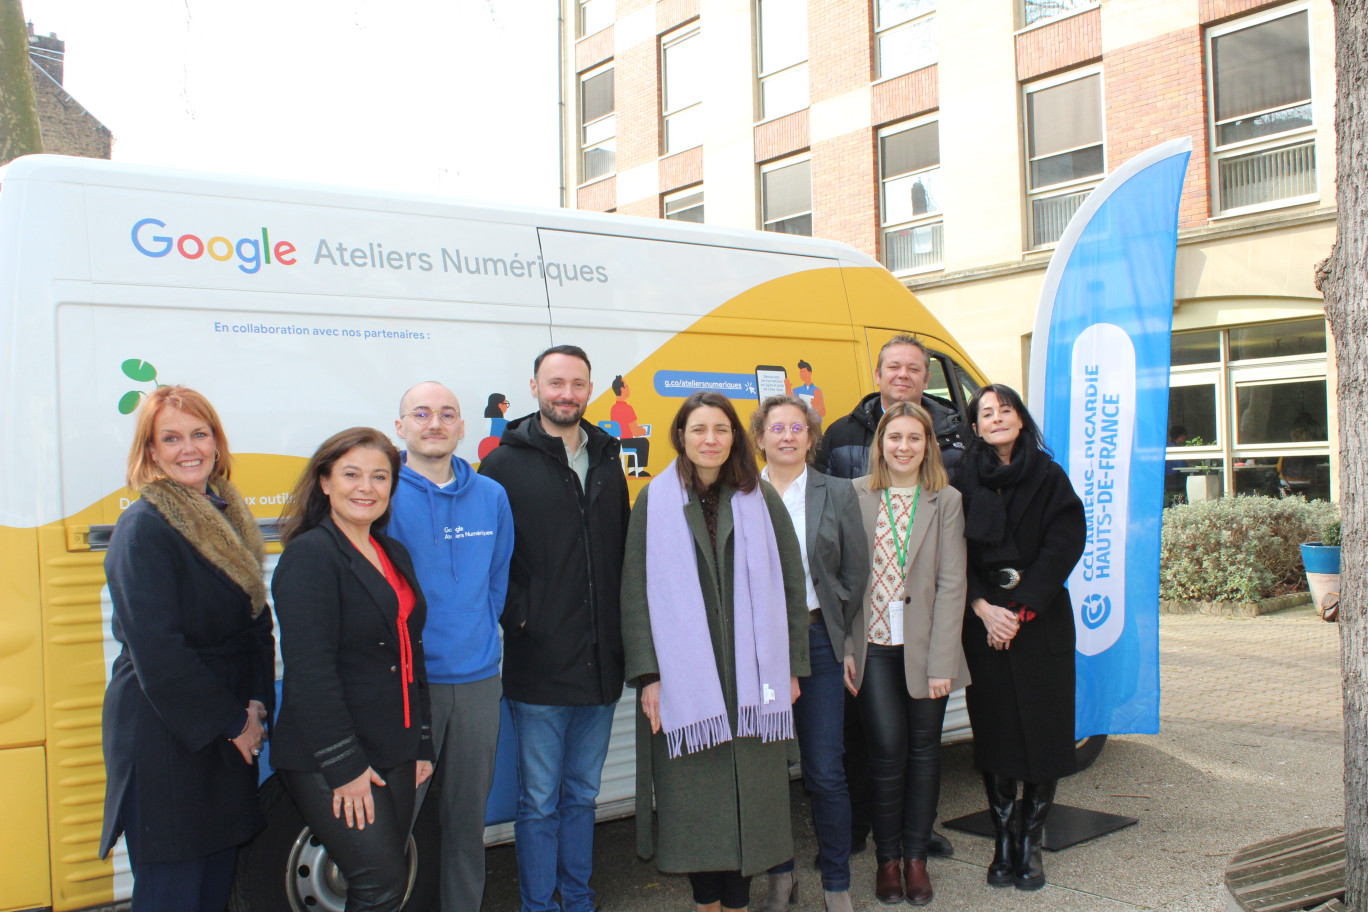 Le 6 mars dernier, Google Ateliers numériques et la CCI Amiens-Picardie officialisaient un partenariat qui propose des ateliers d’accompagnement des professionnels du territoire sur le numérique. 